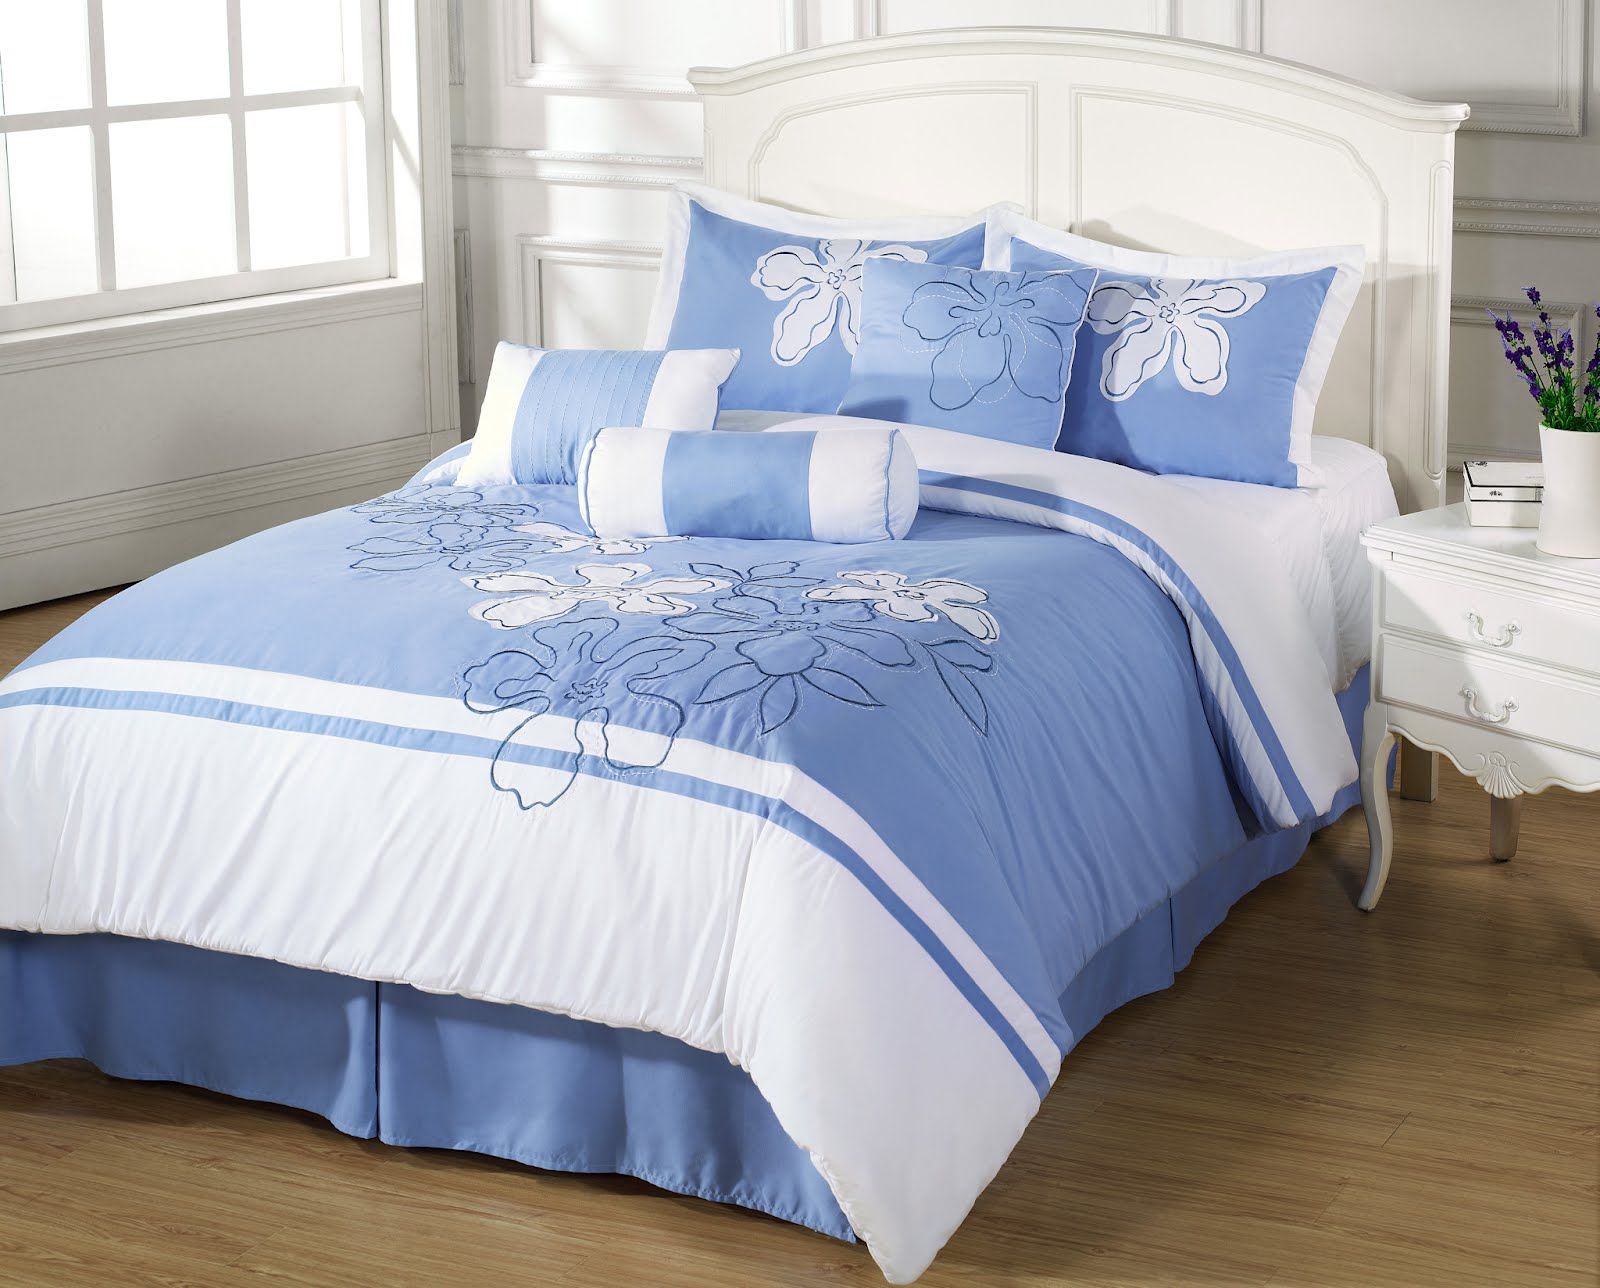 Sky Blue 7 Pcs Applique Embroidery Comforter Set Queen Size